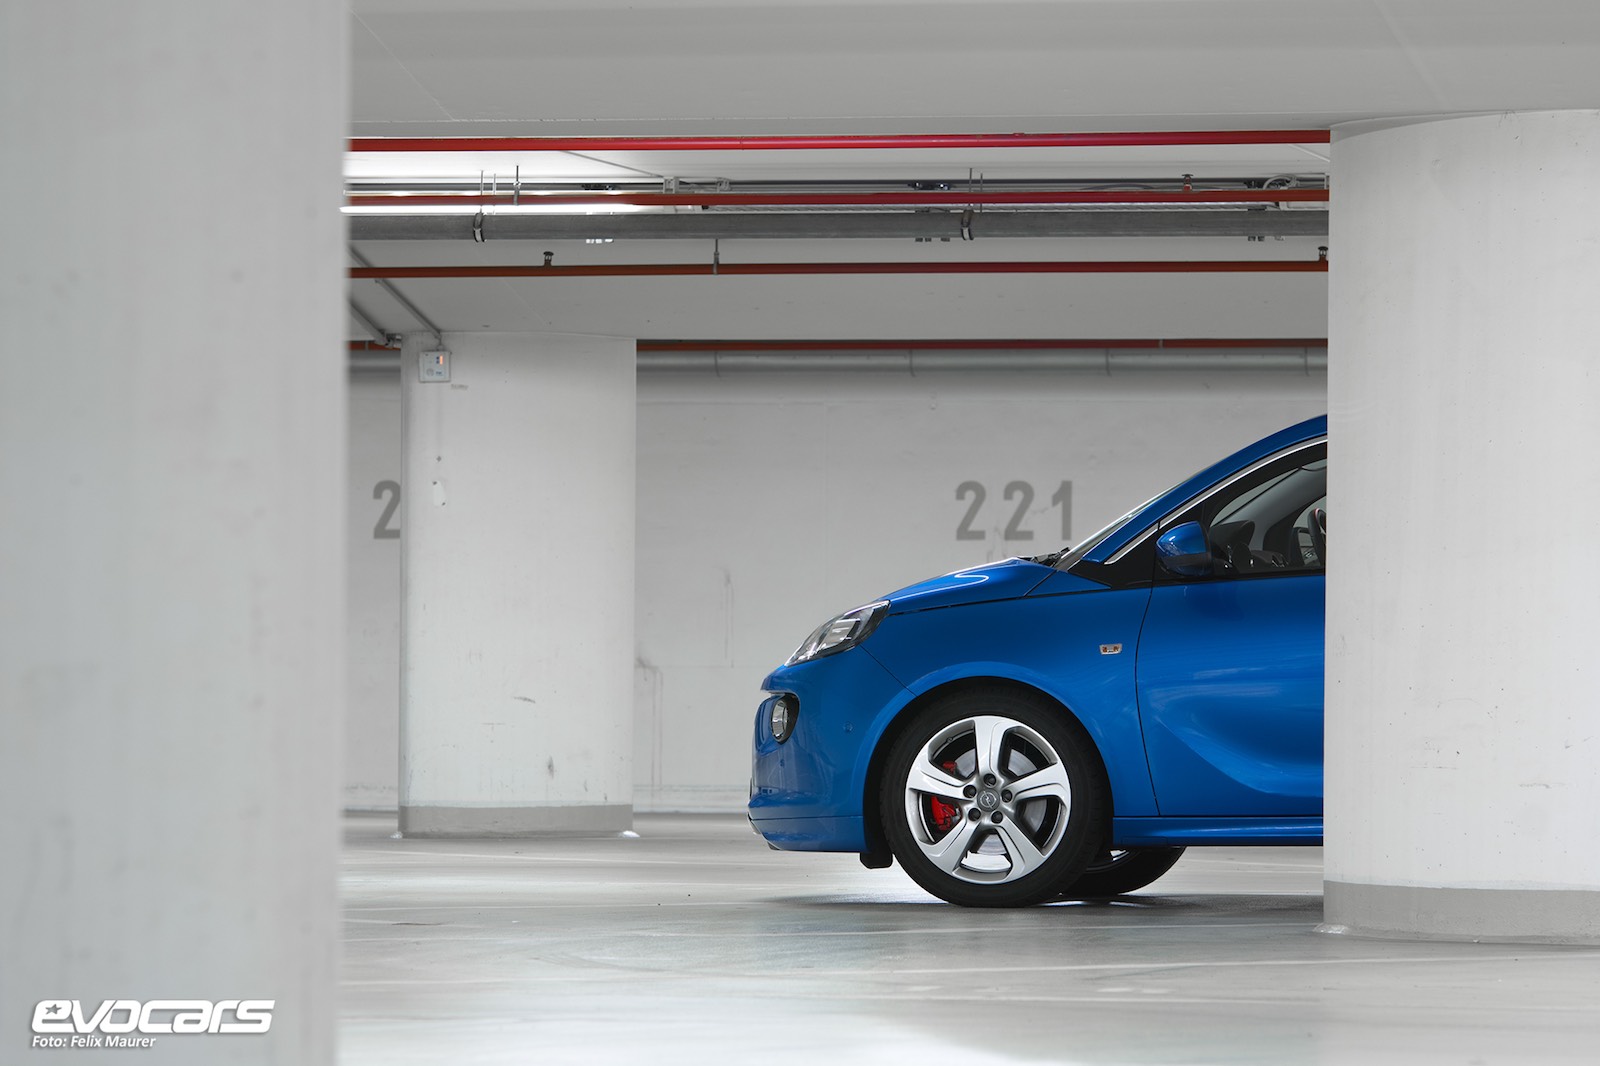 Opel Adam S: Der Kleinste im Test